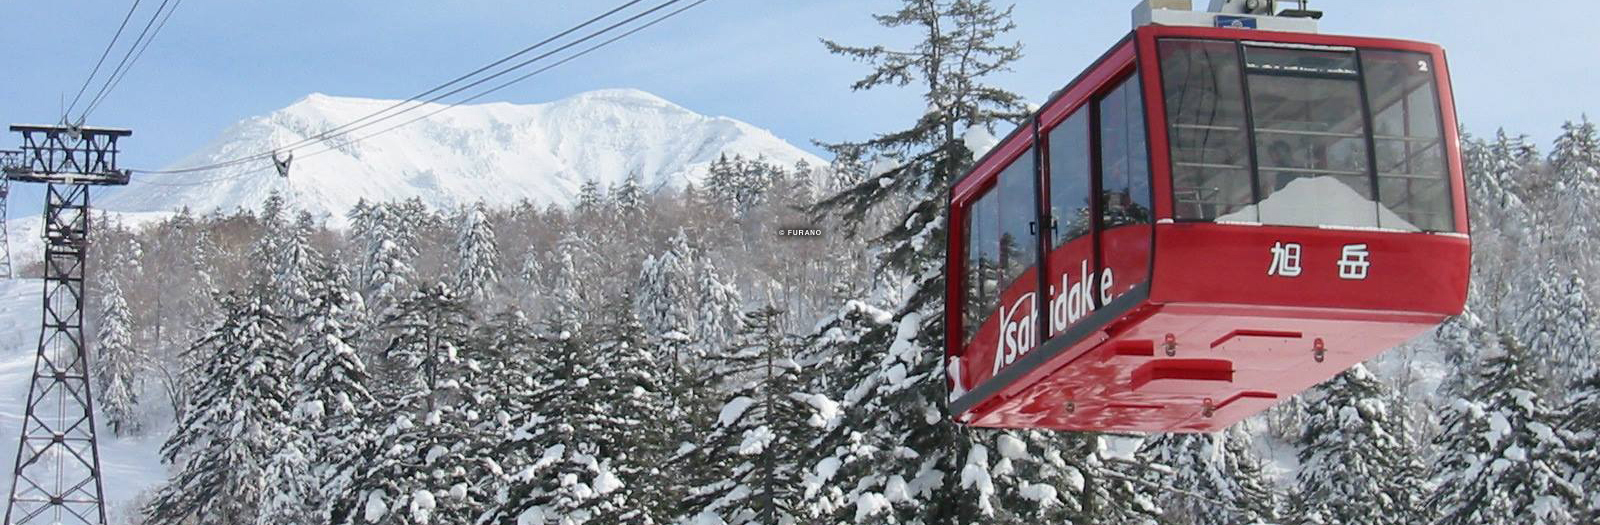 furano ski resort, furano hokkaido, furano japan